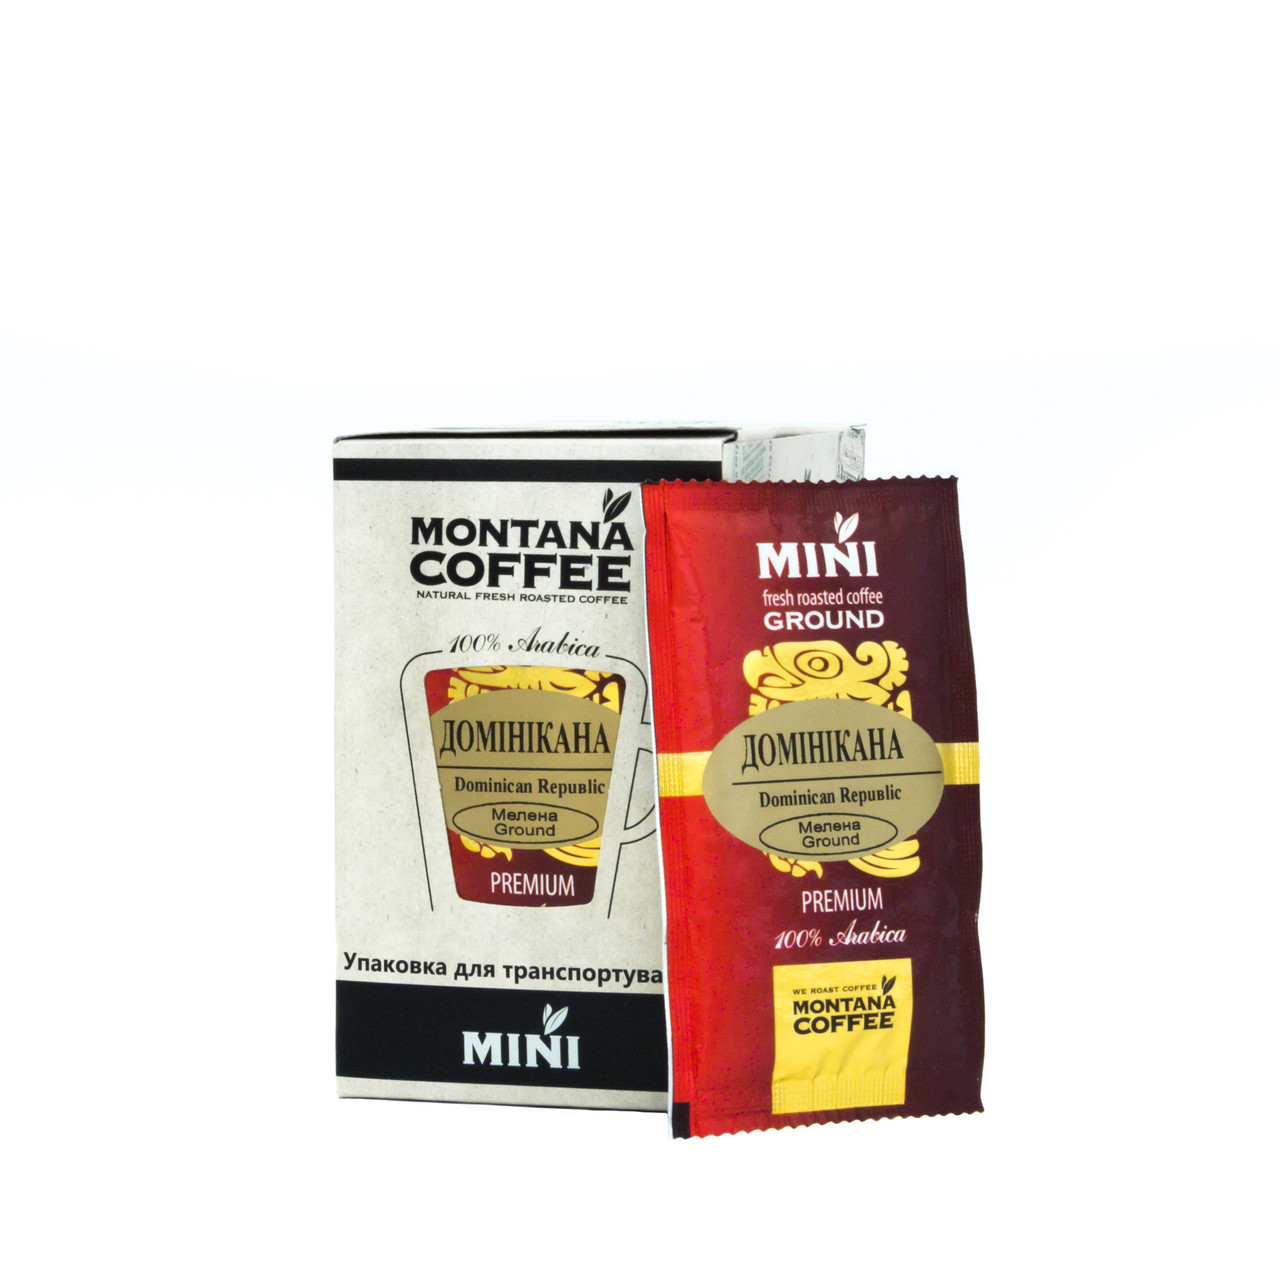 Домінікана Montana coffee MINI 20 шт, фото 1